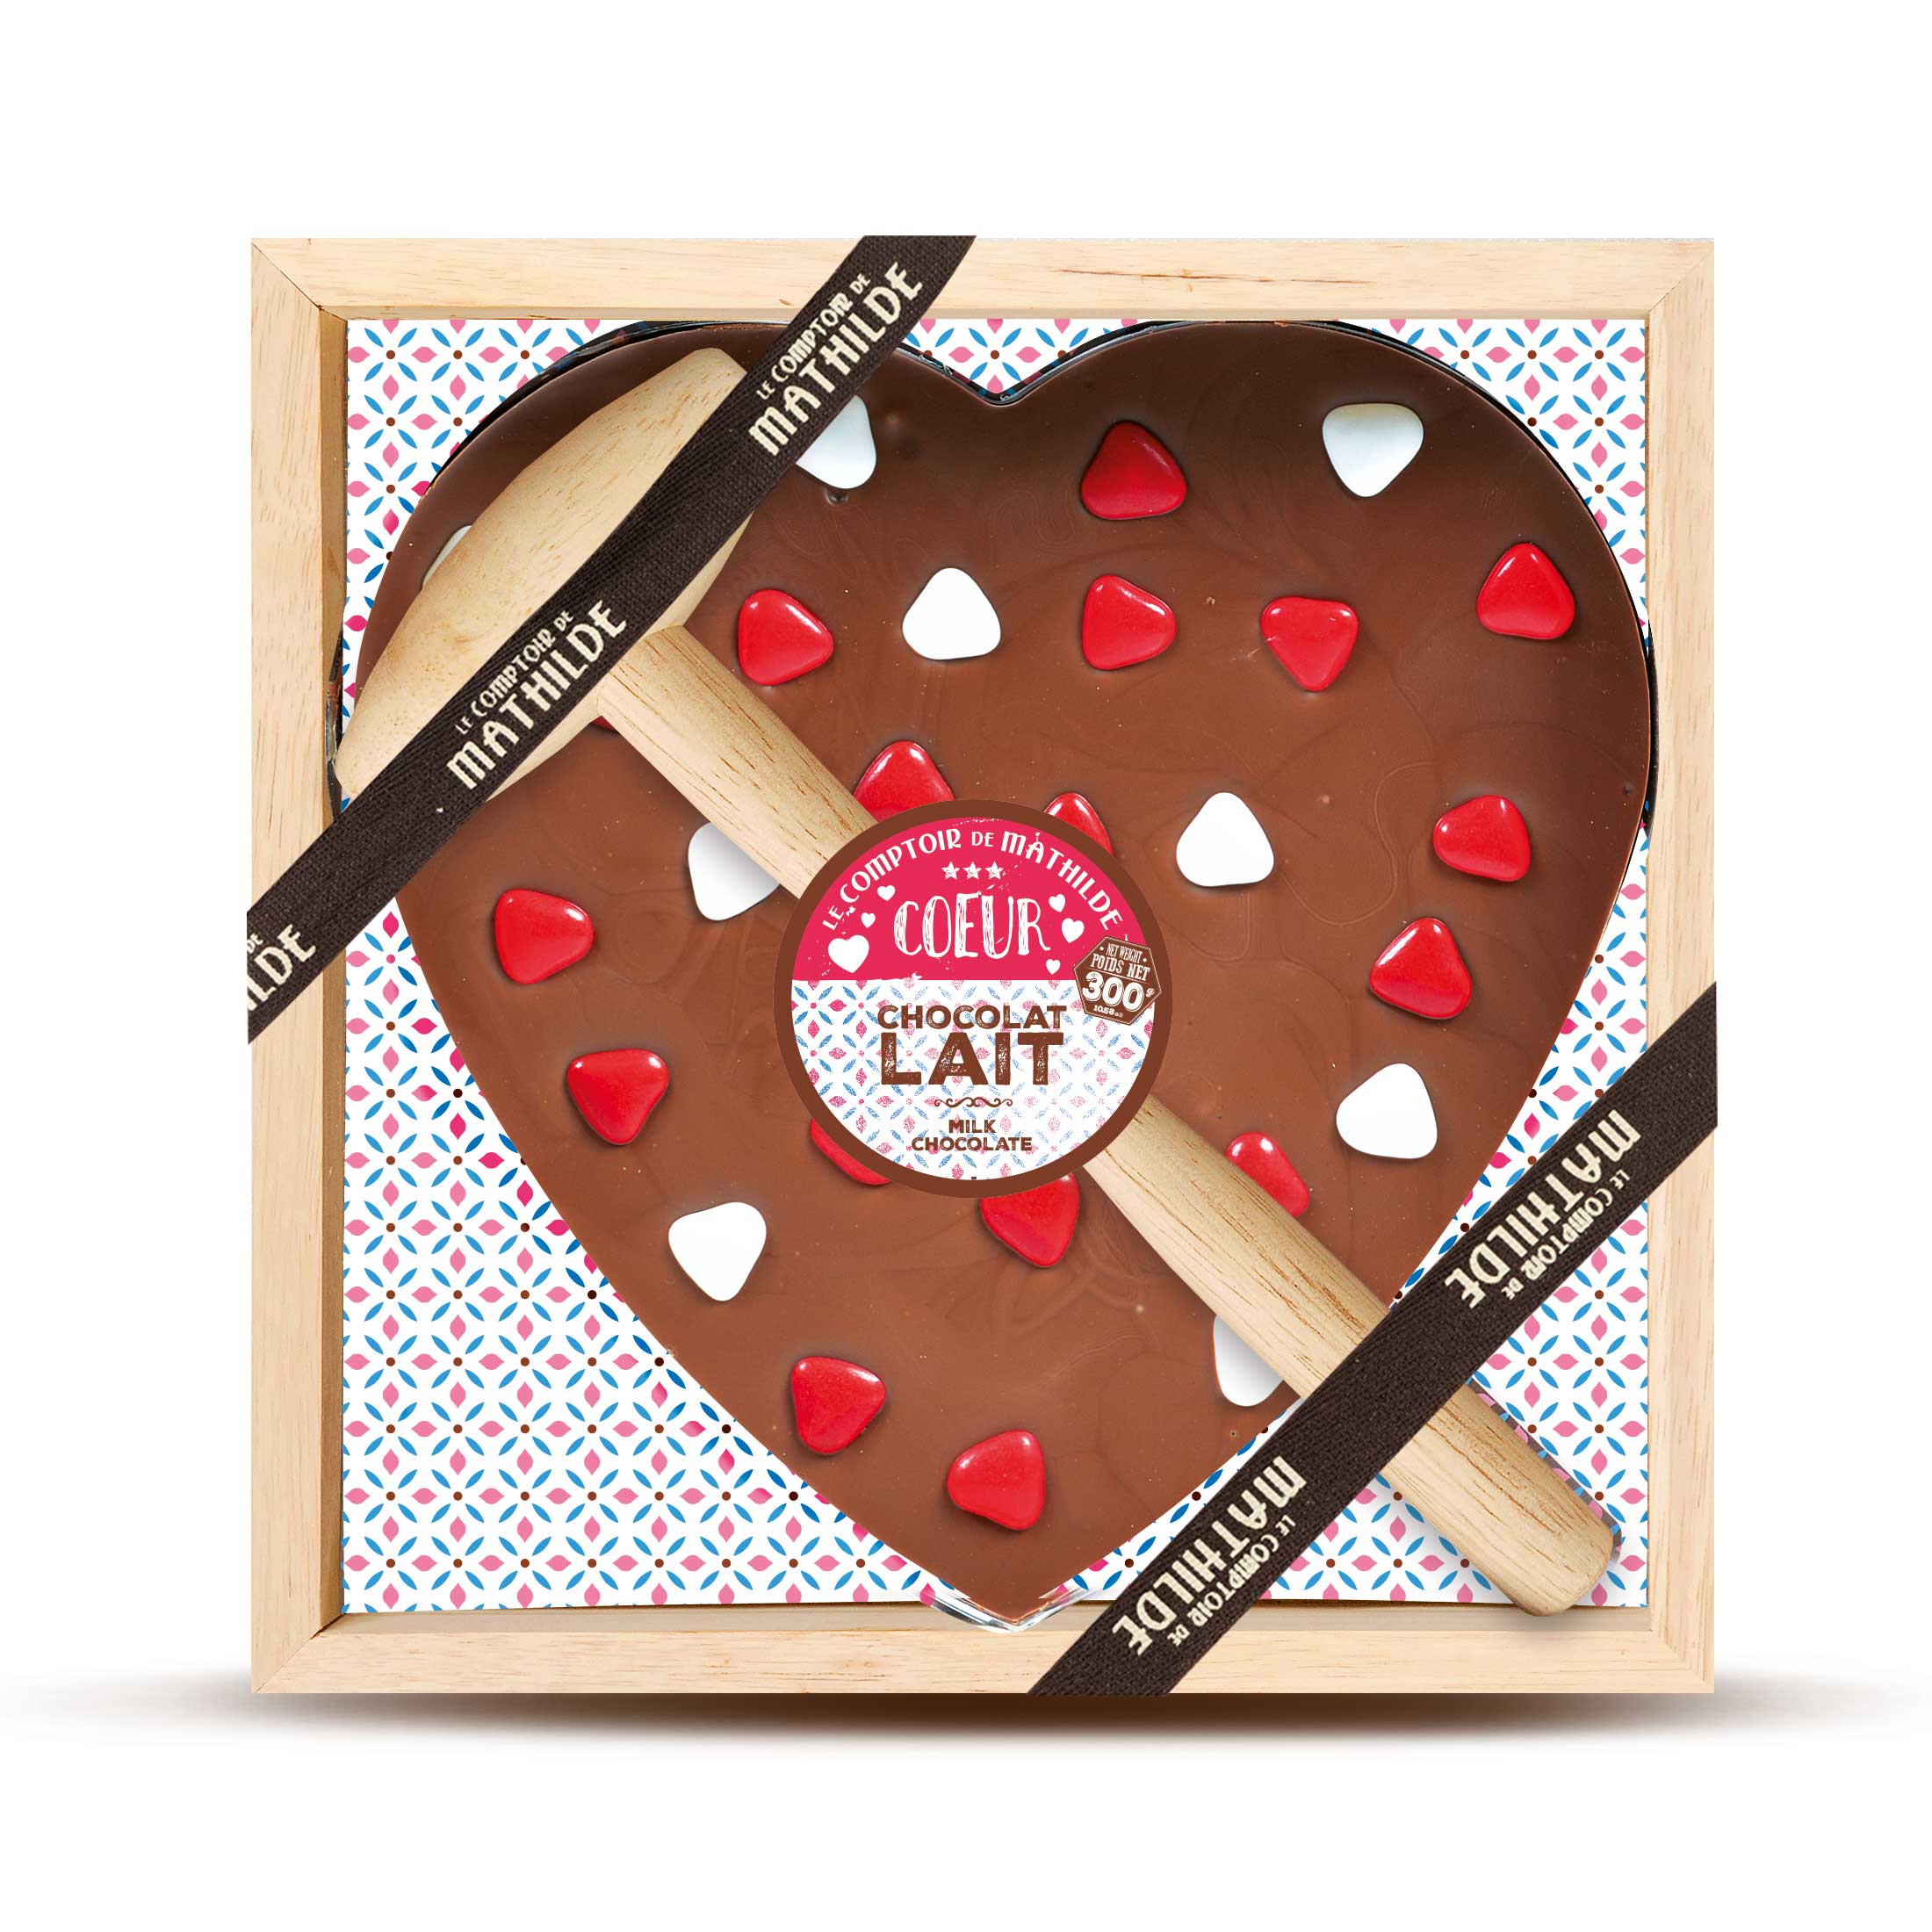 Idée Cadeau Chocolat Noel, Anniversaire, Saint Valentin – Chocolaterie  Chapon